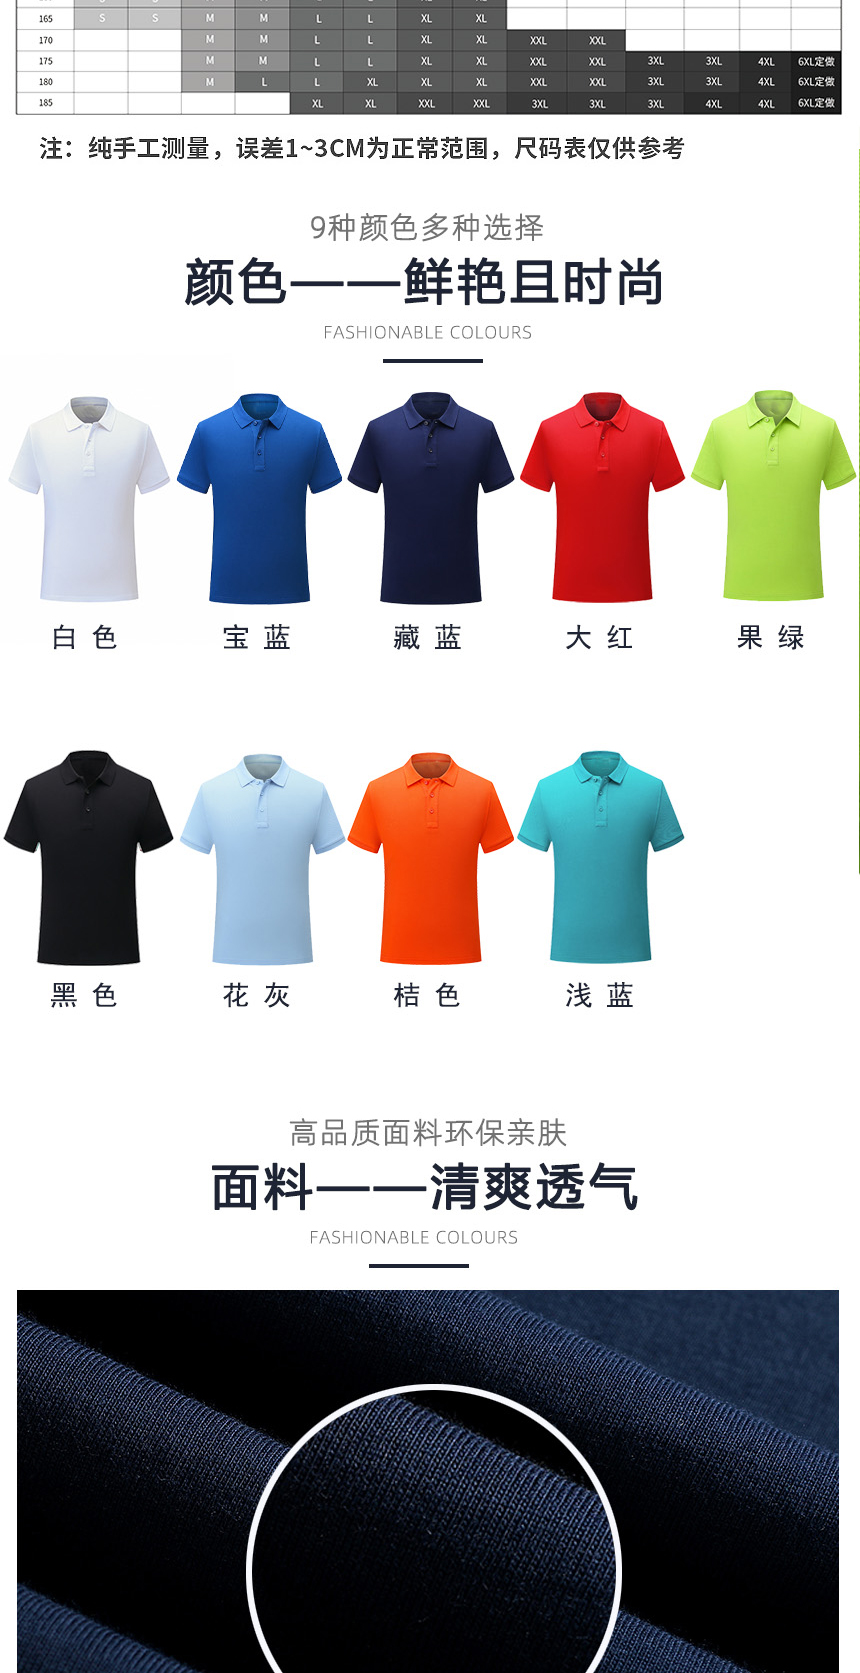 纯棉POLO衫同款不同颜色款式展示，纯棉POLO衫精选优质面料